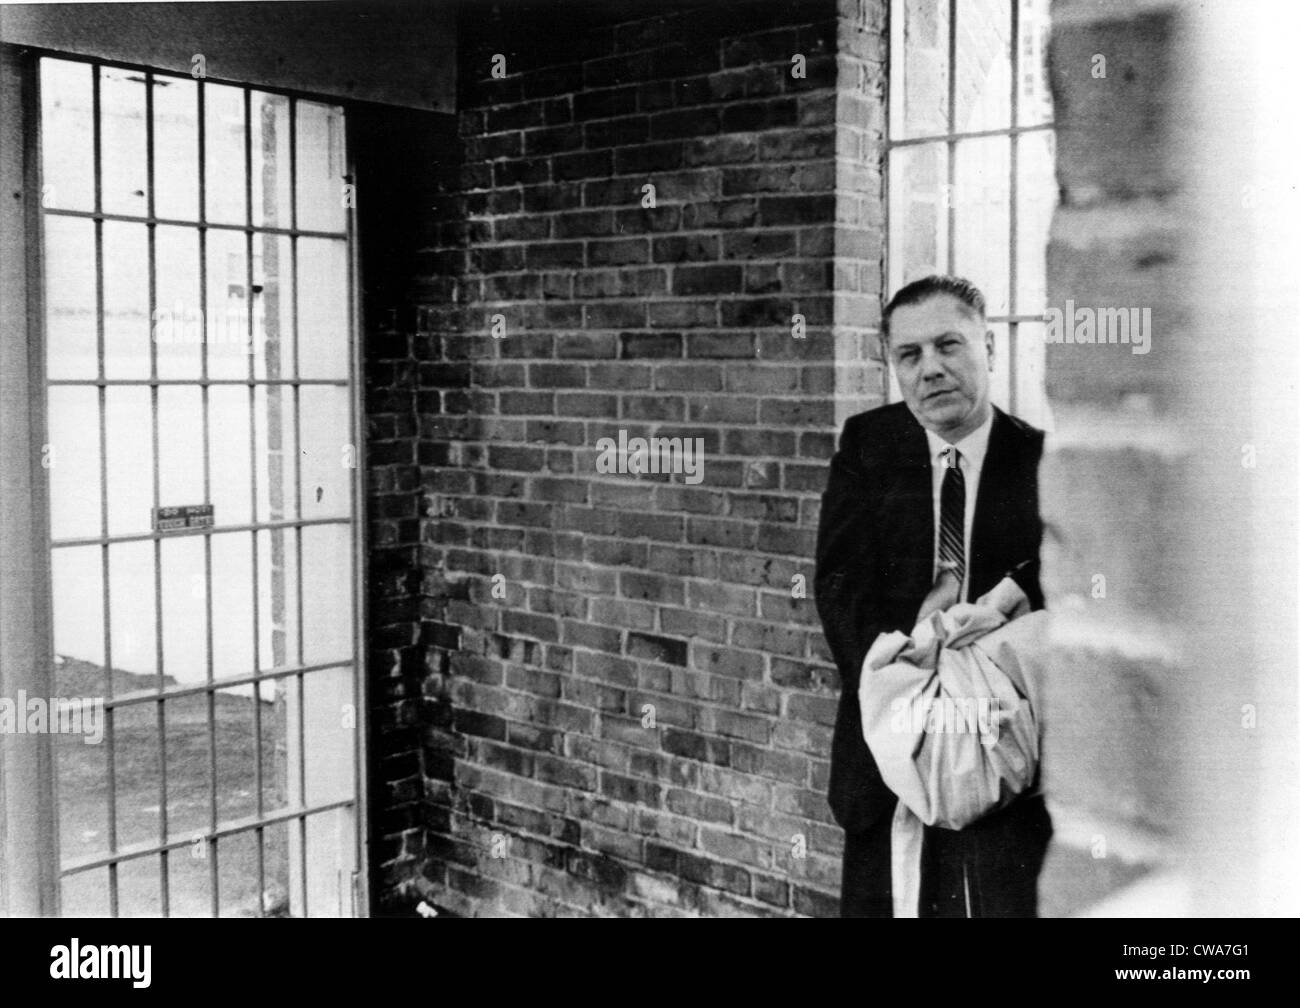 JAMES HOFFA R.- sindicato Teamsters jefe entrando en prisión federal para comenzar un 8 año de prisión. Lewisburg, PA., 3/7/67. Cortesía: CSU Foto de stock